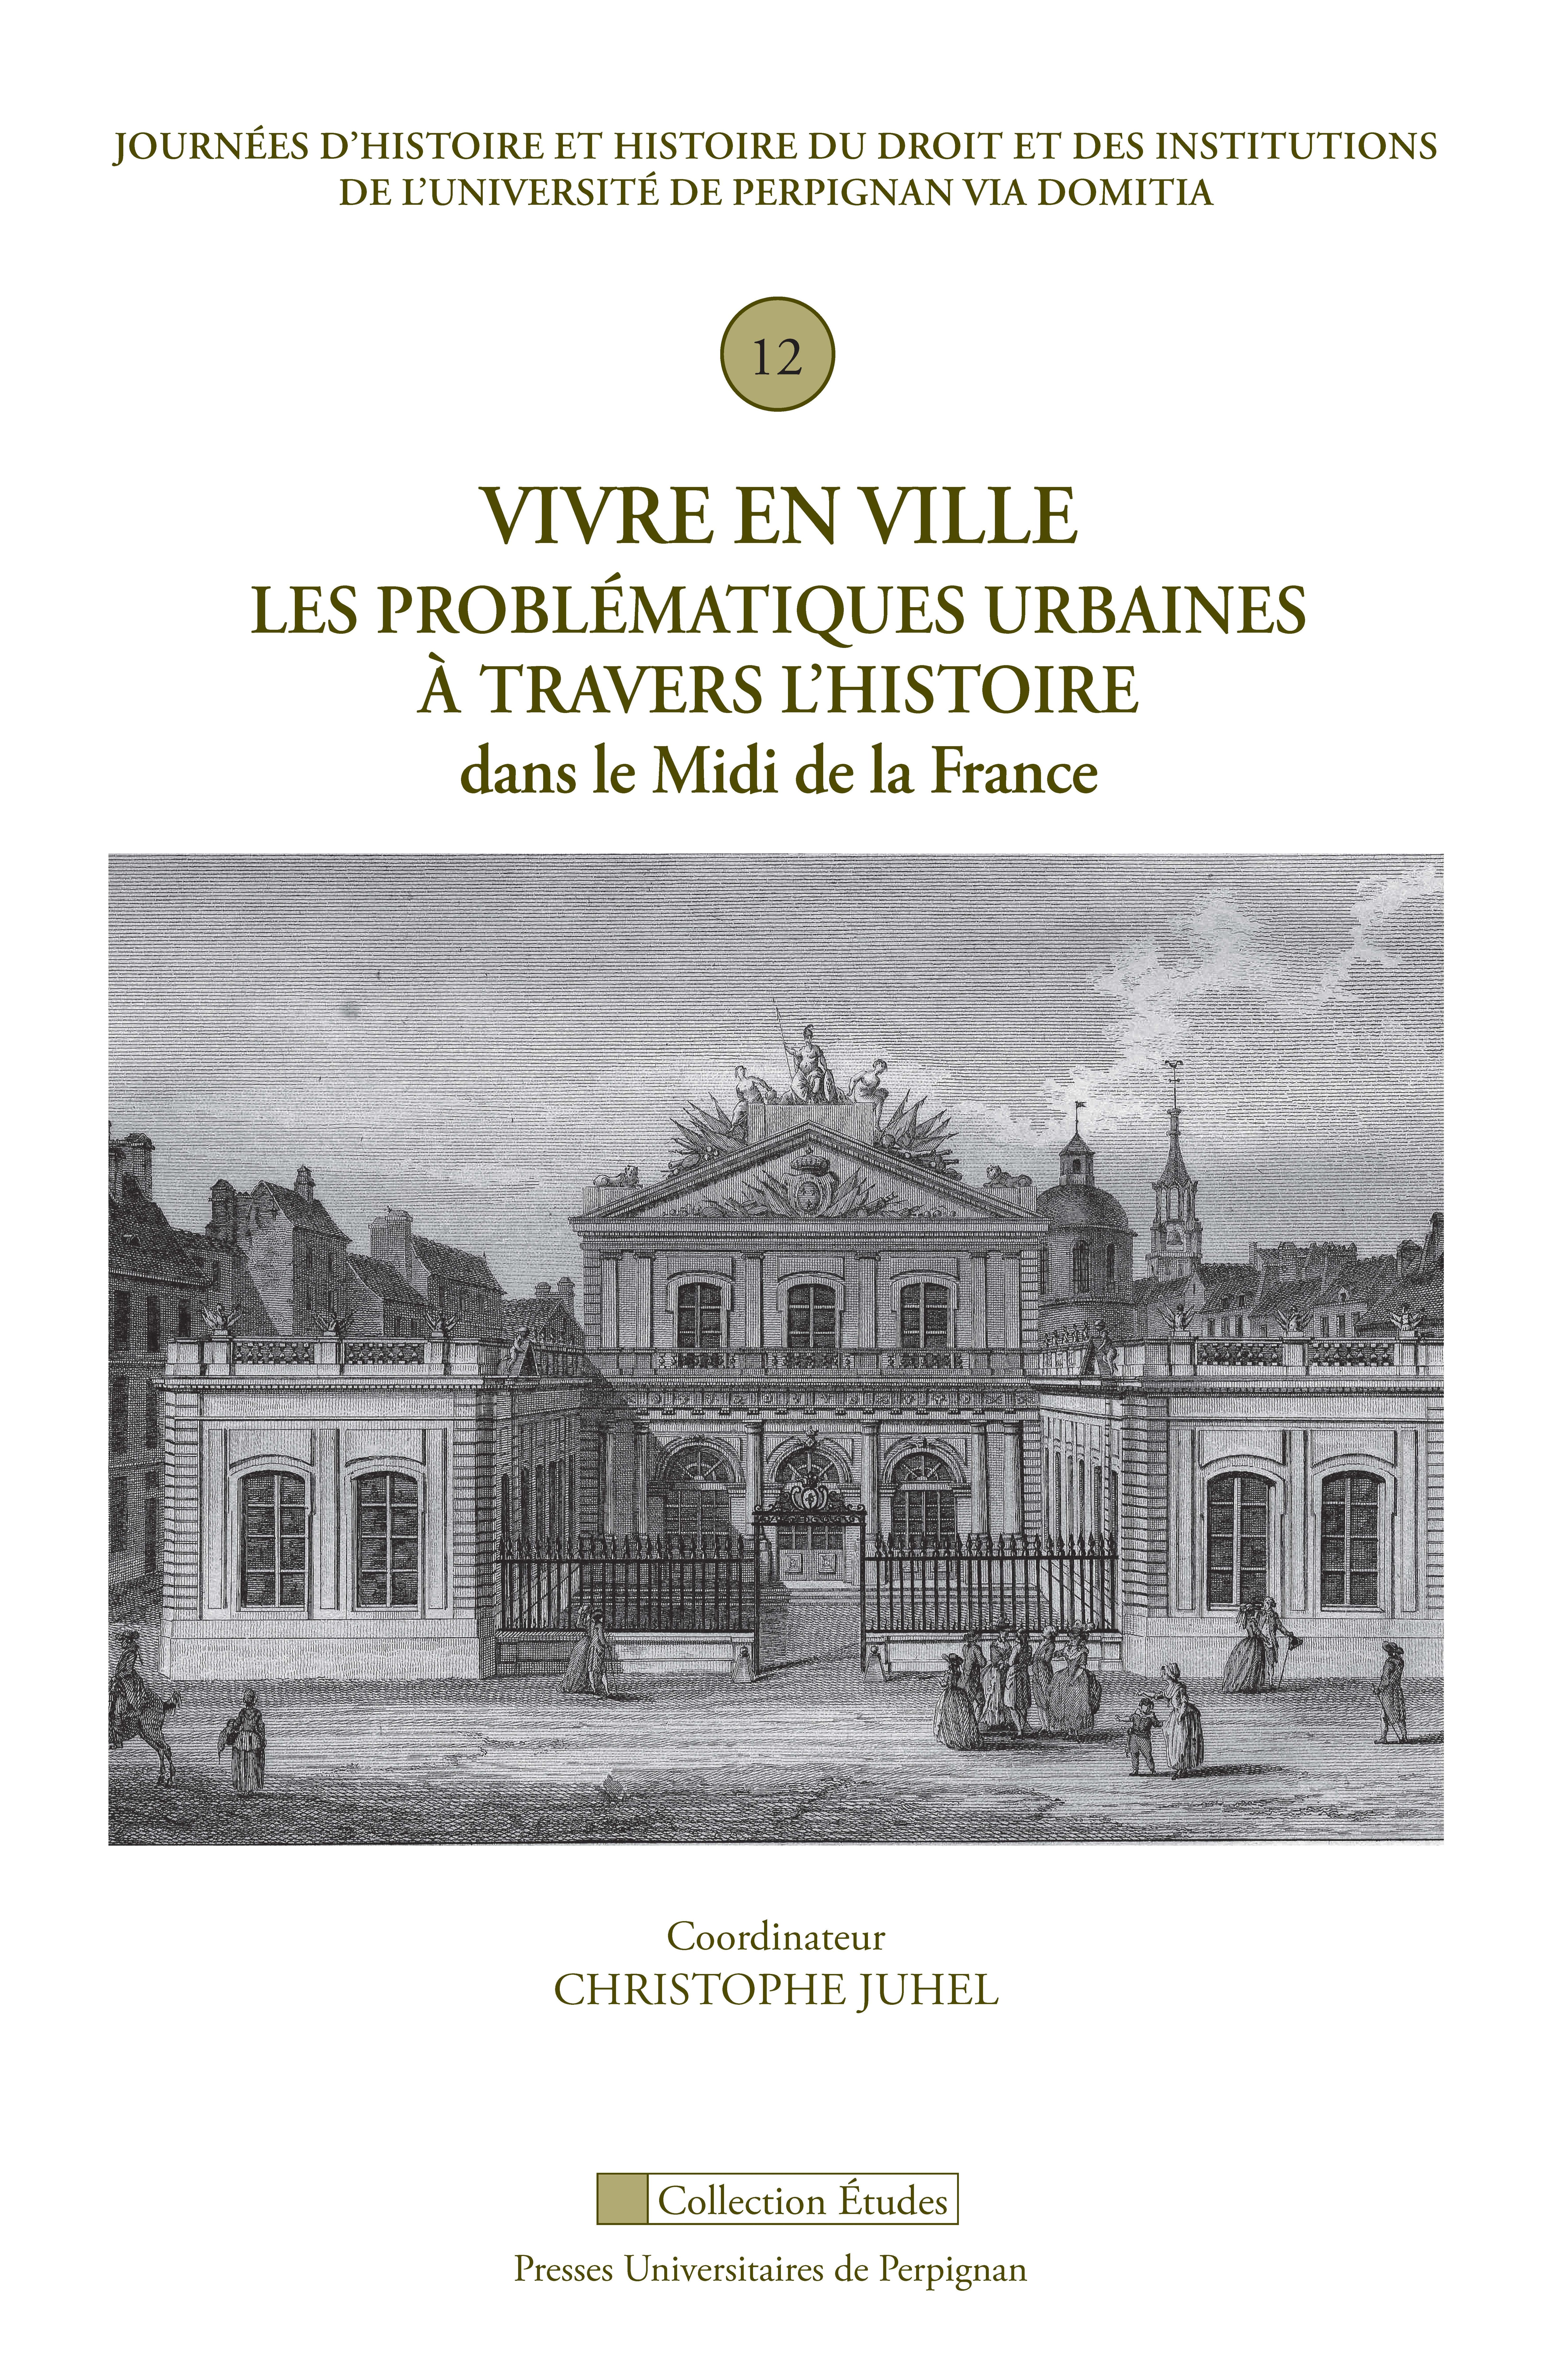 Vivre en ville : les problématiques urbaines à travers l’histoire dans le Midi de la France